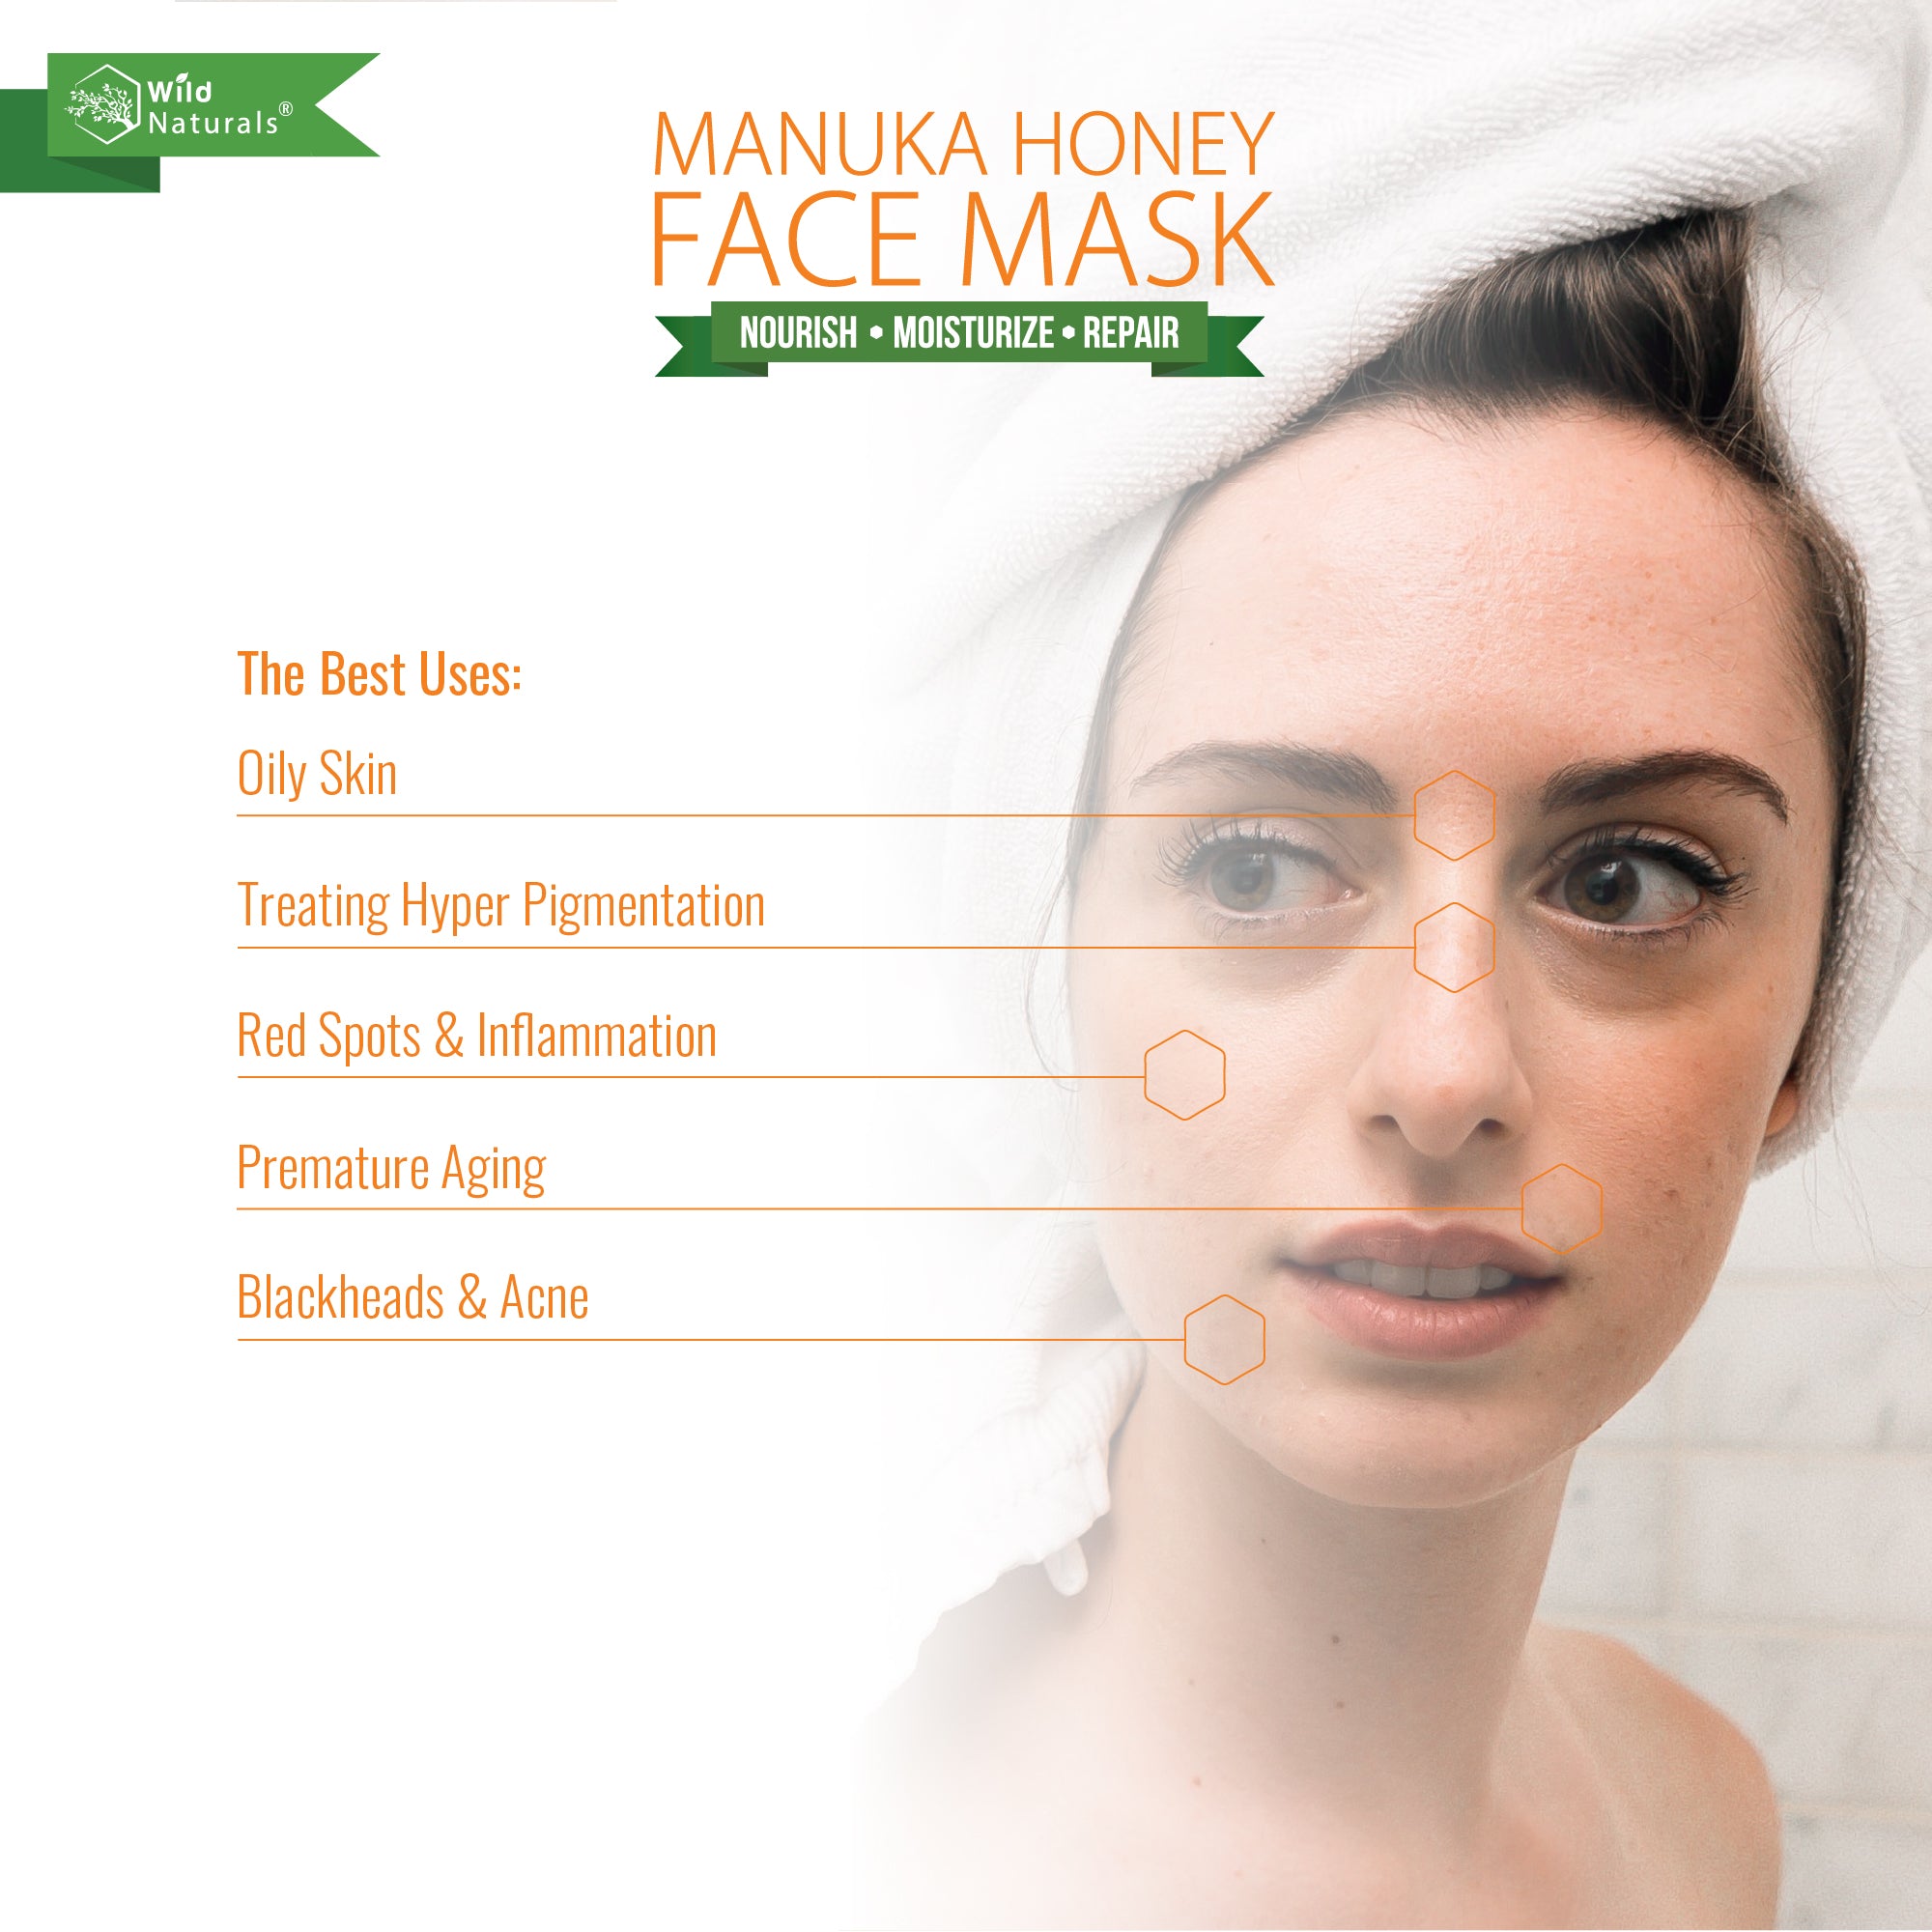 Manuka Honey Face Mask Cover Image